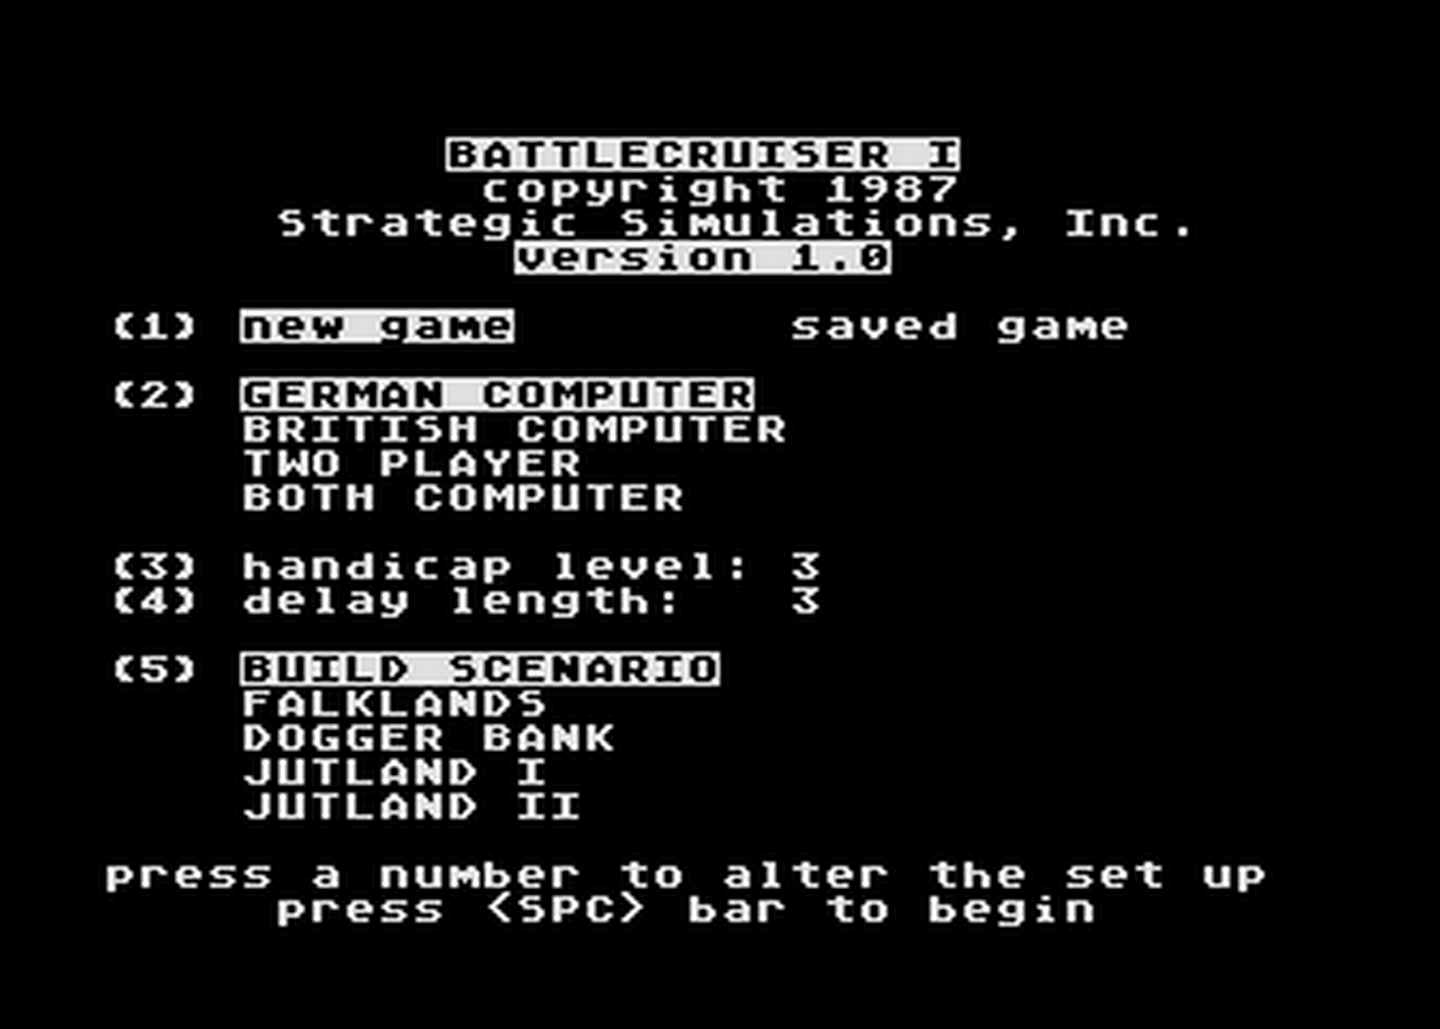 Atari GameBase Battlecruiser_I_(World_War_I) SSI_-_Strategic_Simulations_Inc 1987